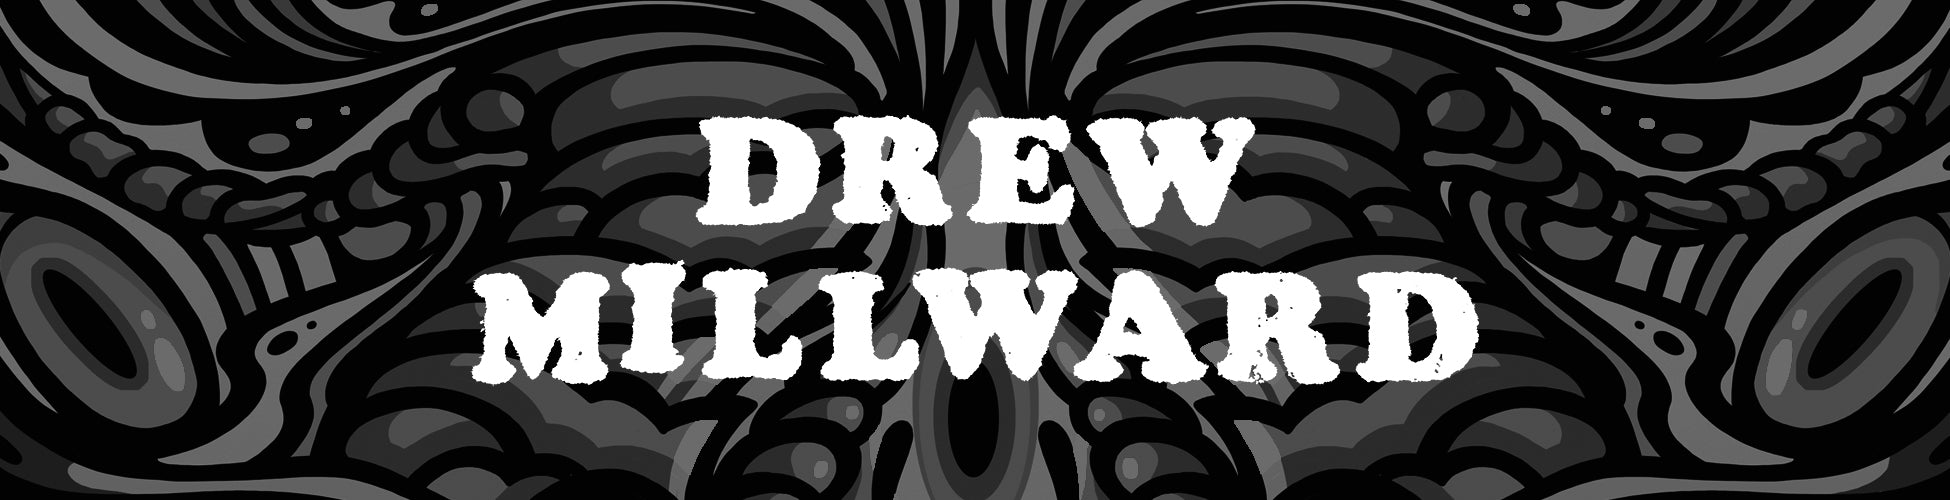 Drew Millward